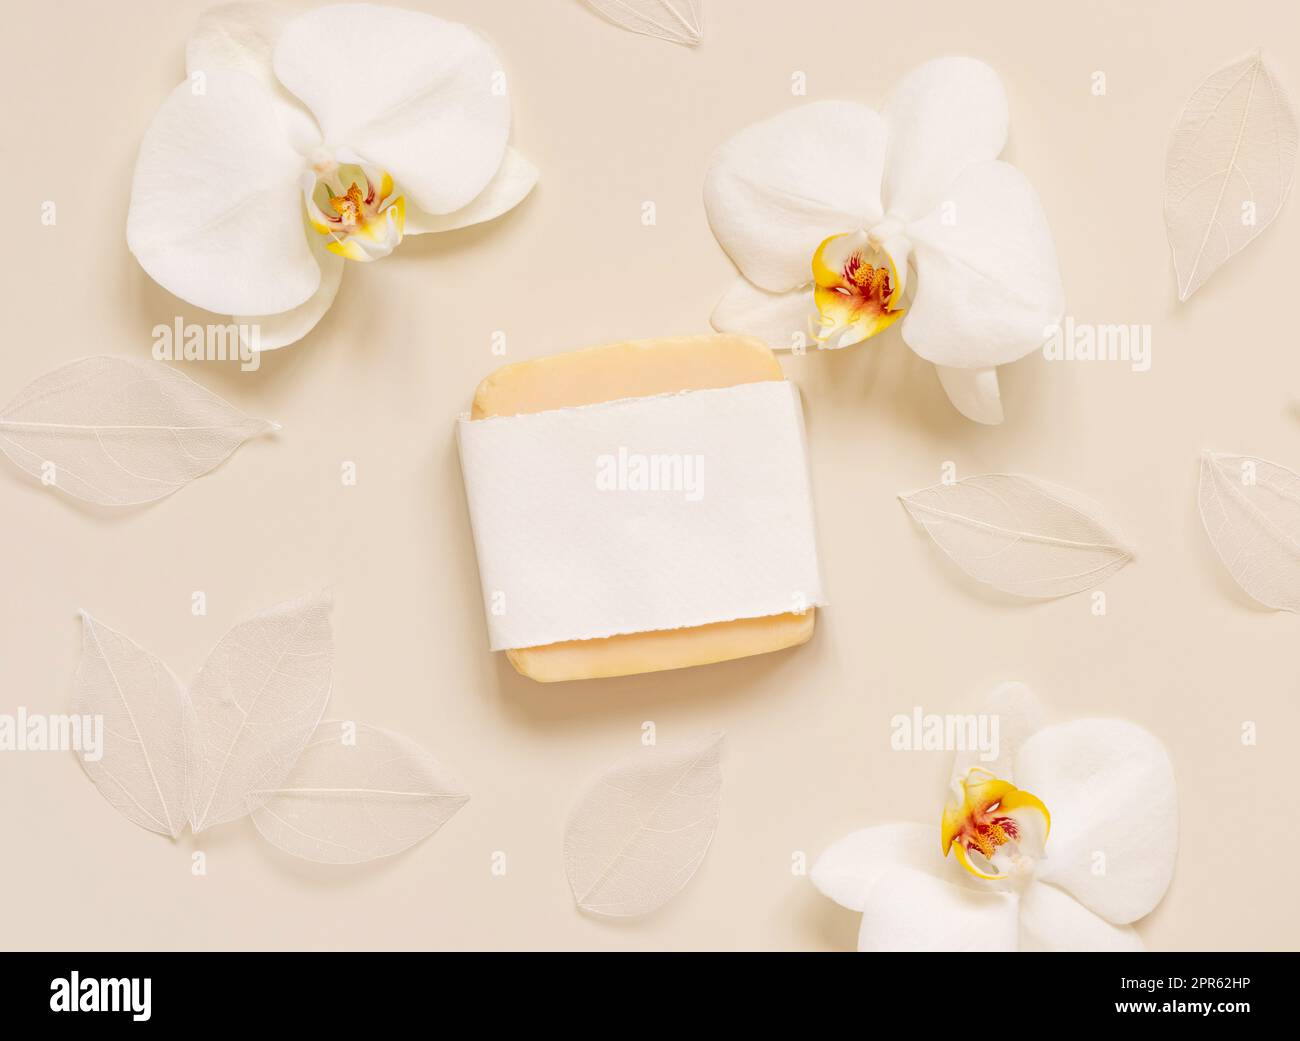 Bar à savon fait à la main près des fleurs d'orchidées blanches sur la vue de dessus jaune clair. Maquette Banque D'Images